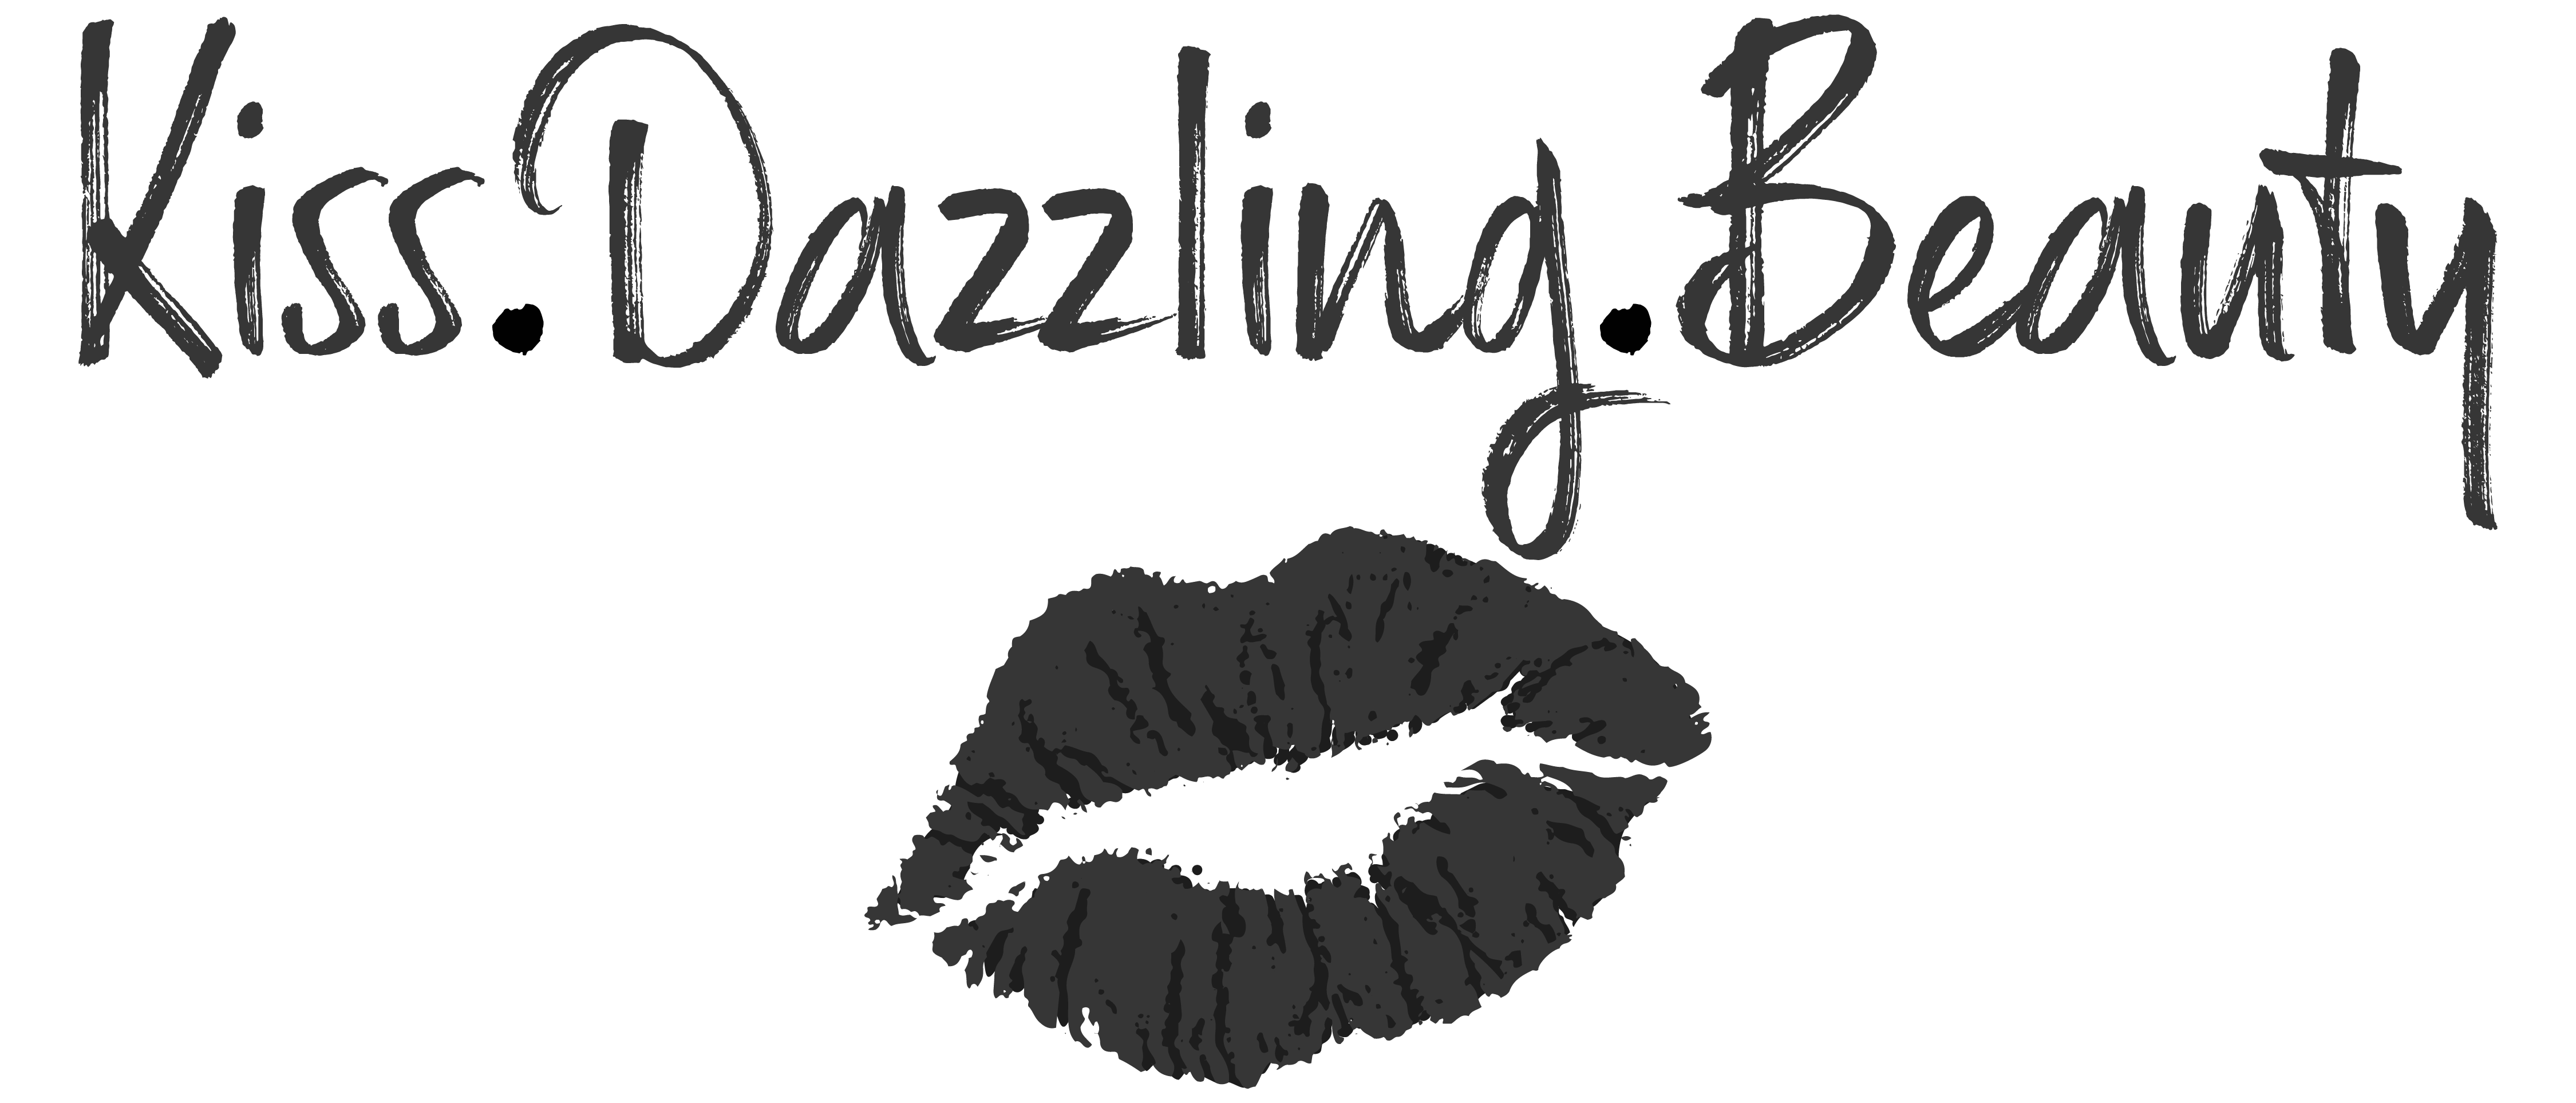 Kiss Dazzling Beauty (KDB)